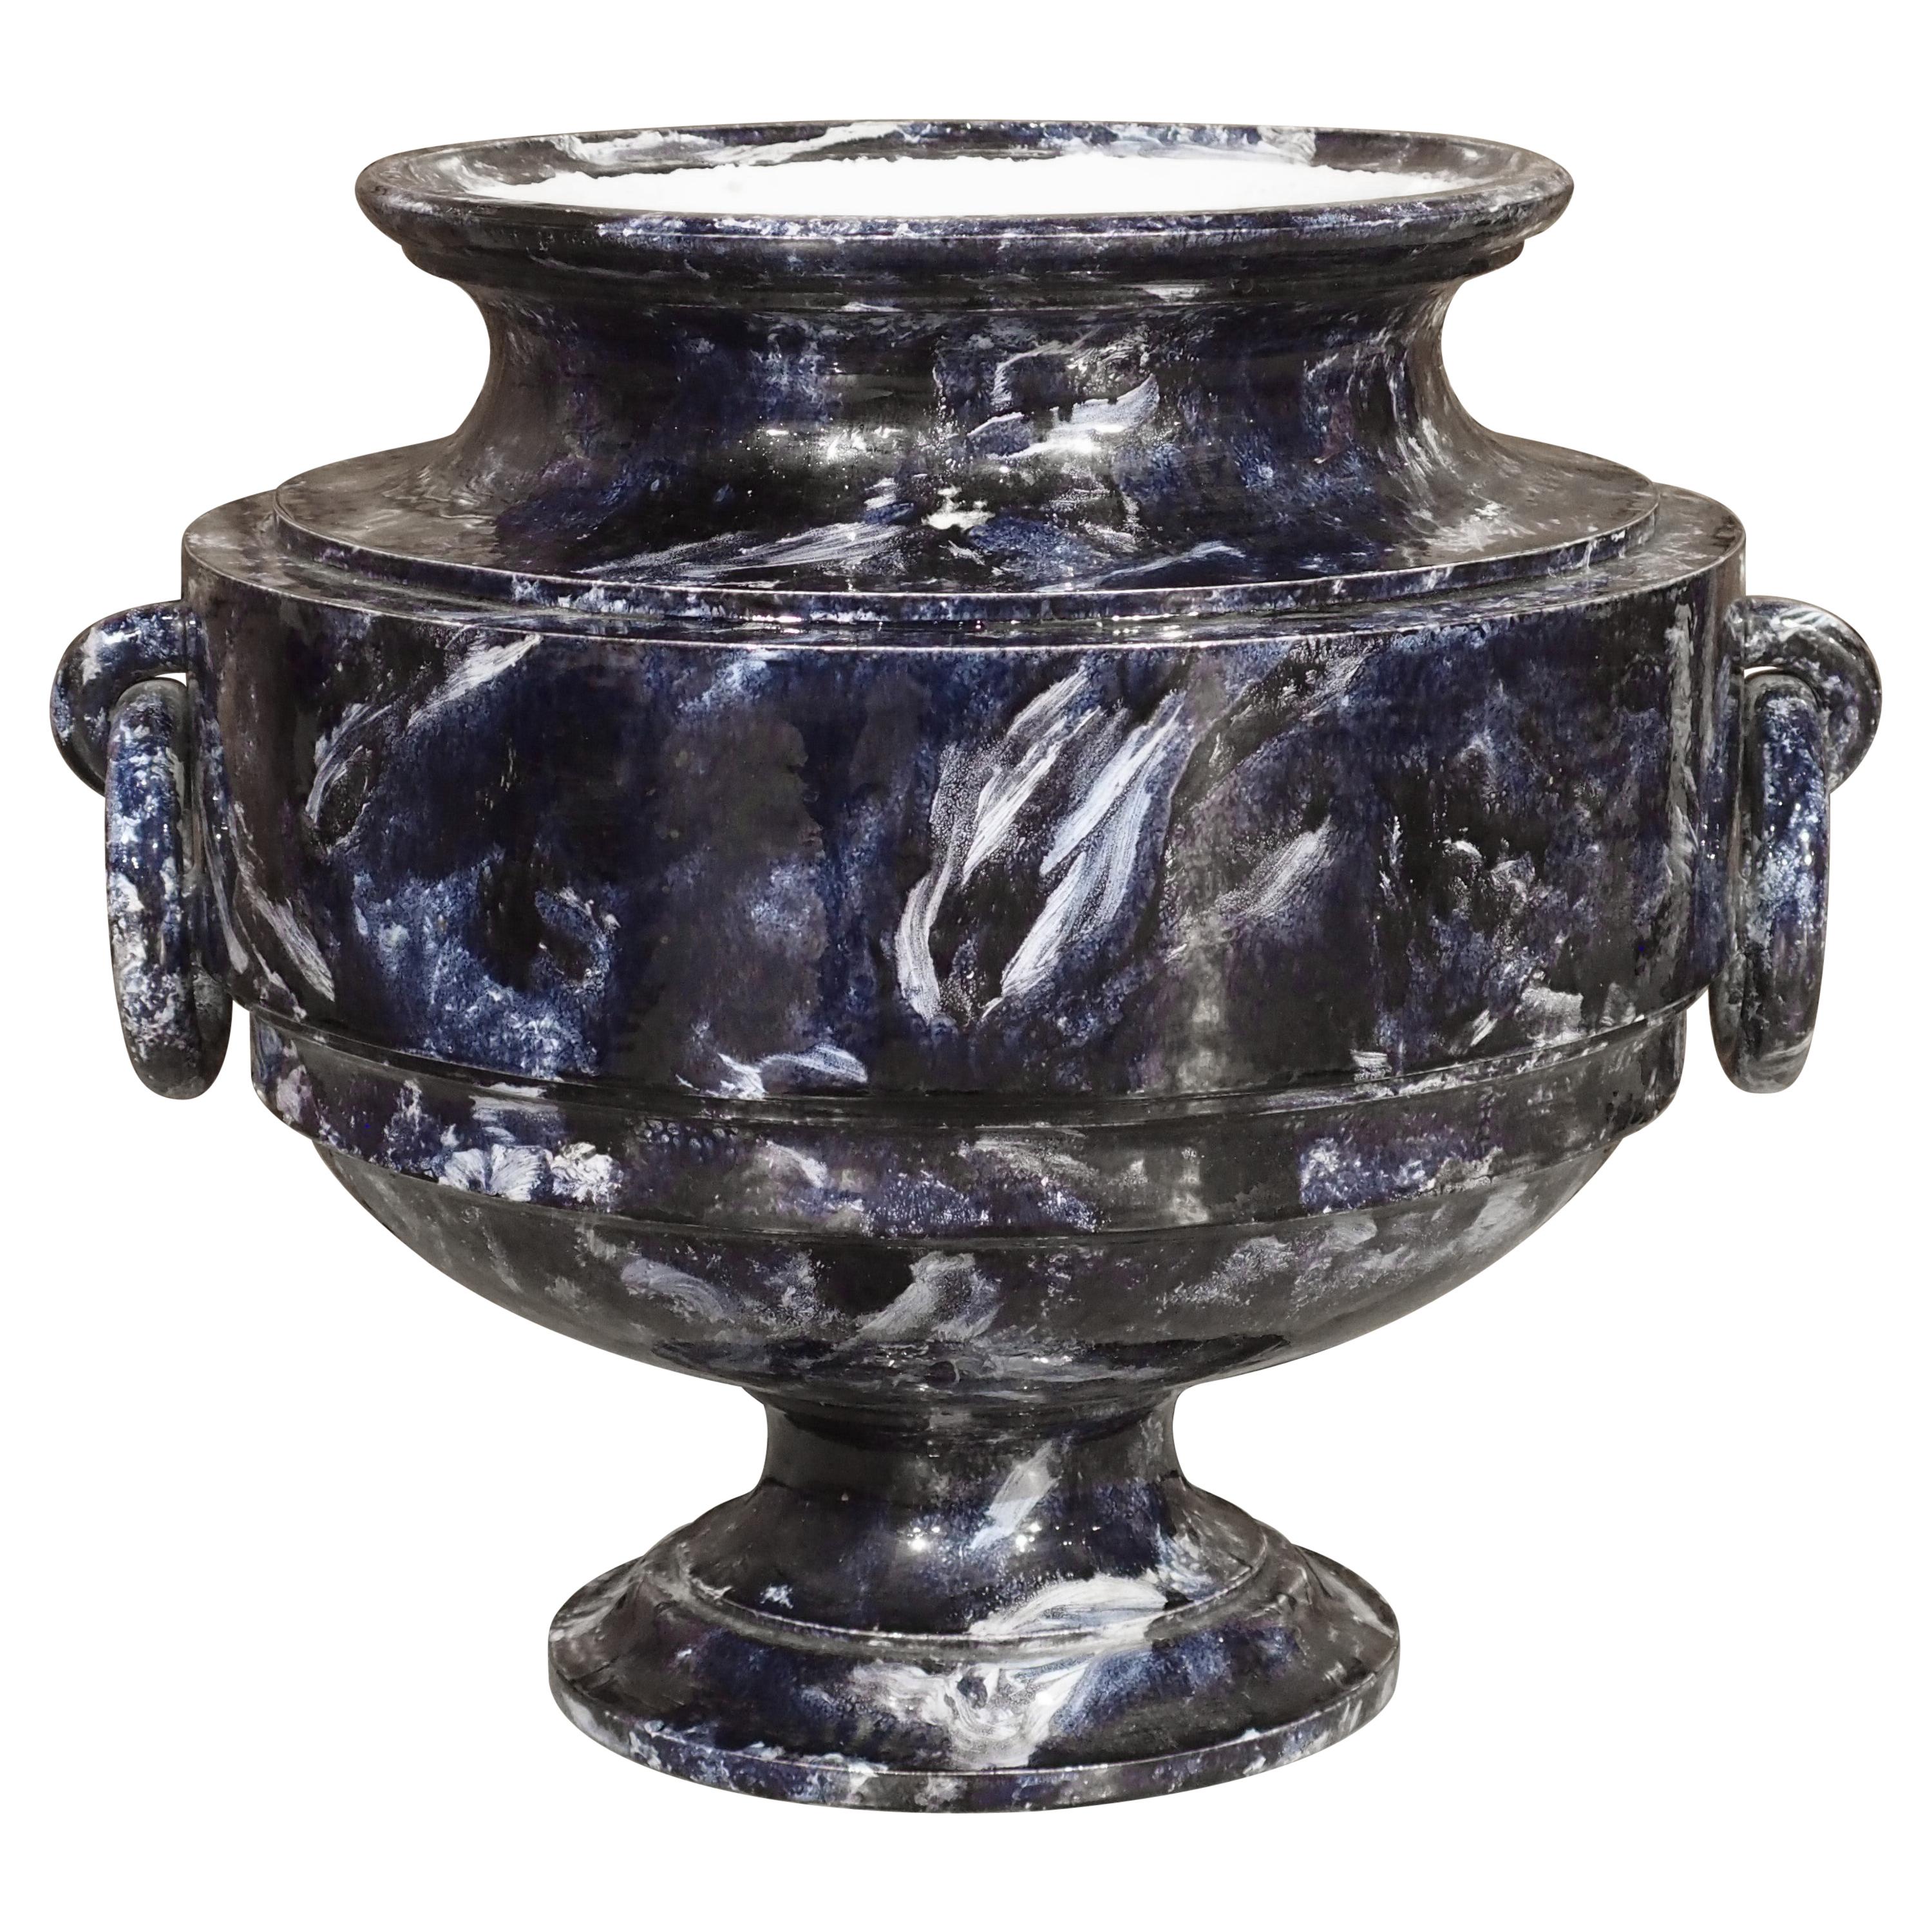 Blau marmorierte Vase aus Sèvres-Porzellan, Frankreich, datiert 1872